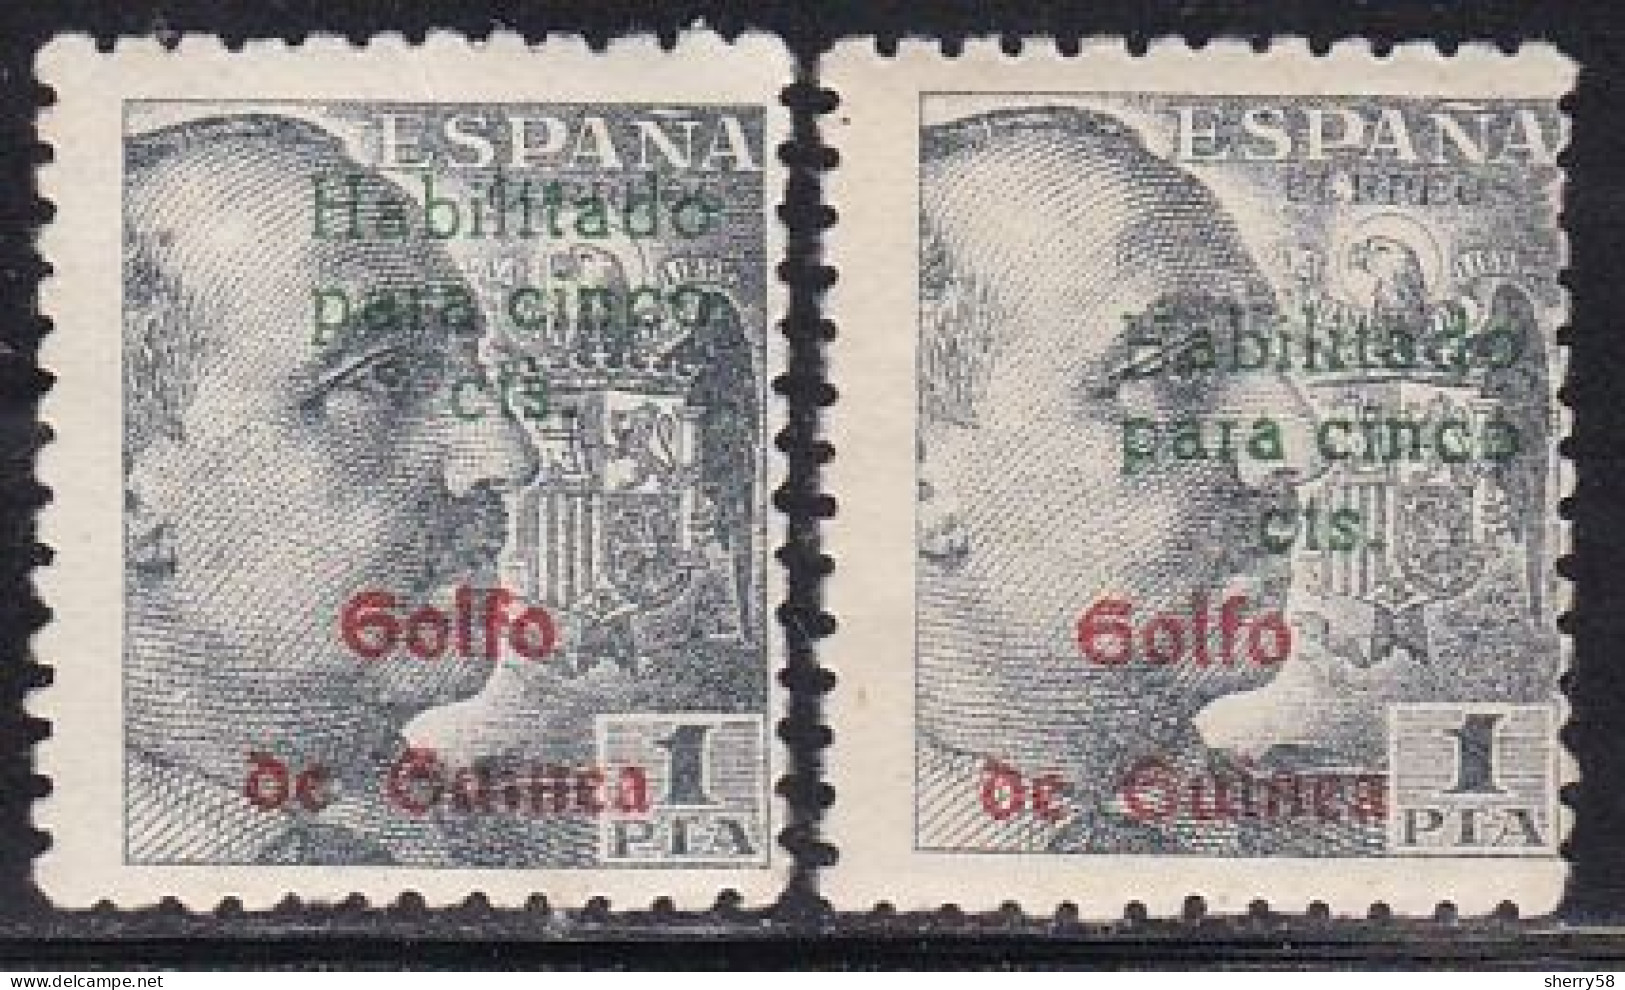 GUINEA ESPAÑOLA-1949-ED. 273A SELLOS DE ESPAÑA HABILITADOS. GENERAL FRANCO -2 Ejemplares. Uno Con Habilitación Desplazad - Guinea Española